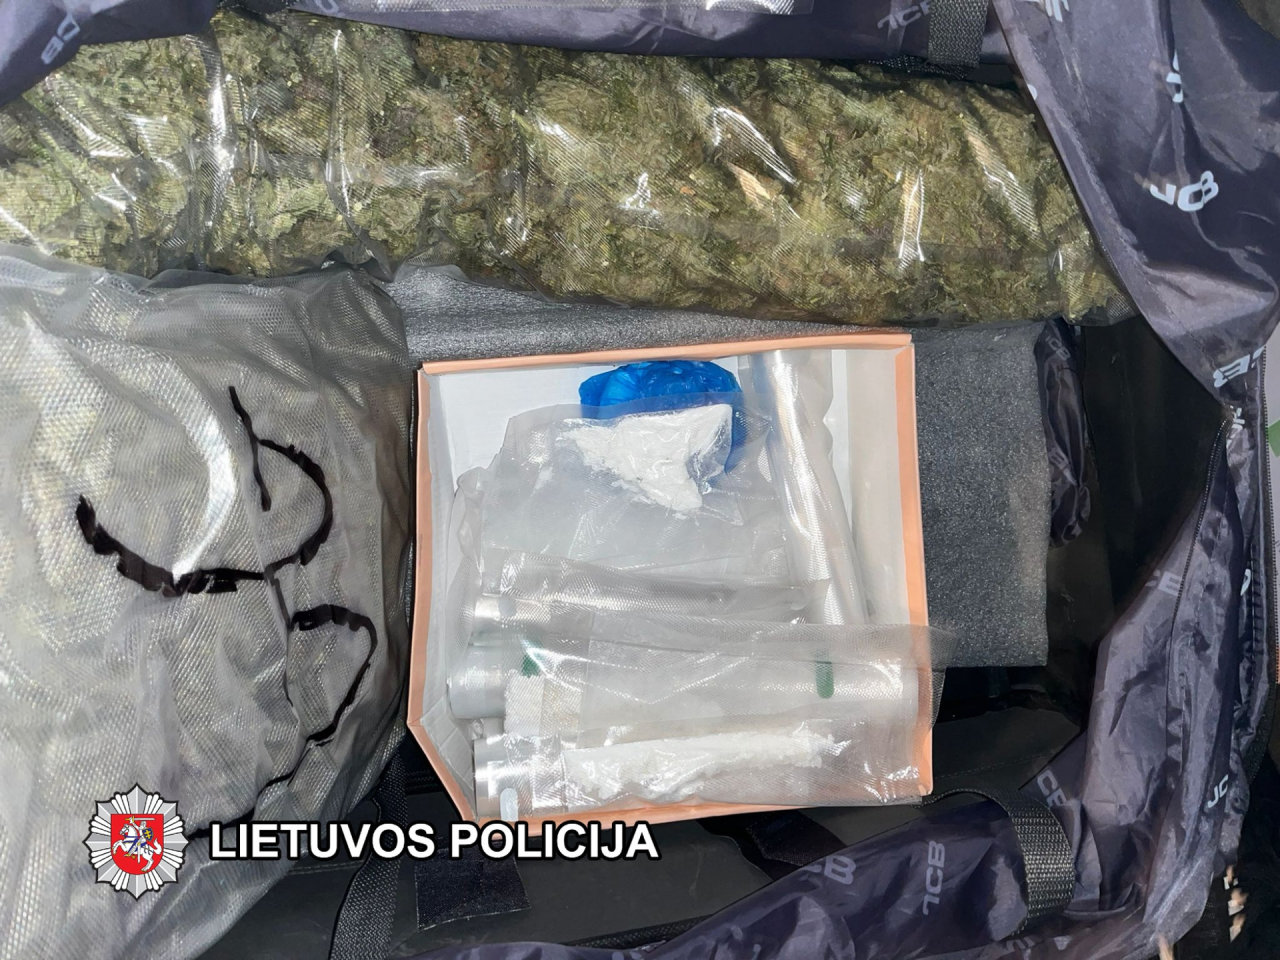 Per kratą vilniečio garaže rasta 500 gramų kokaino, apie 2,5 kg kanapių